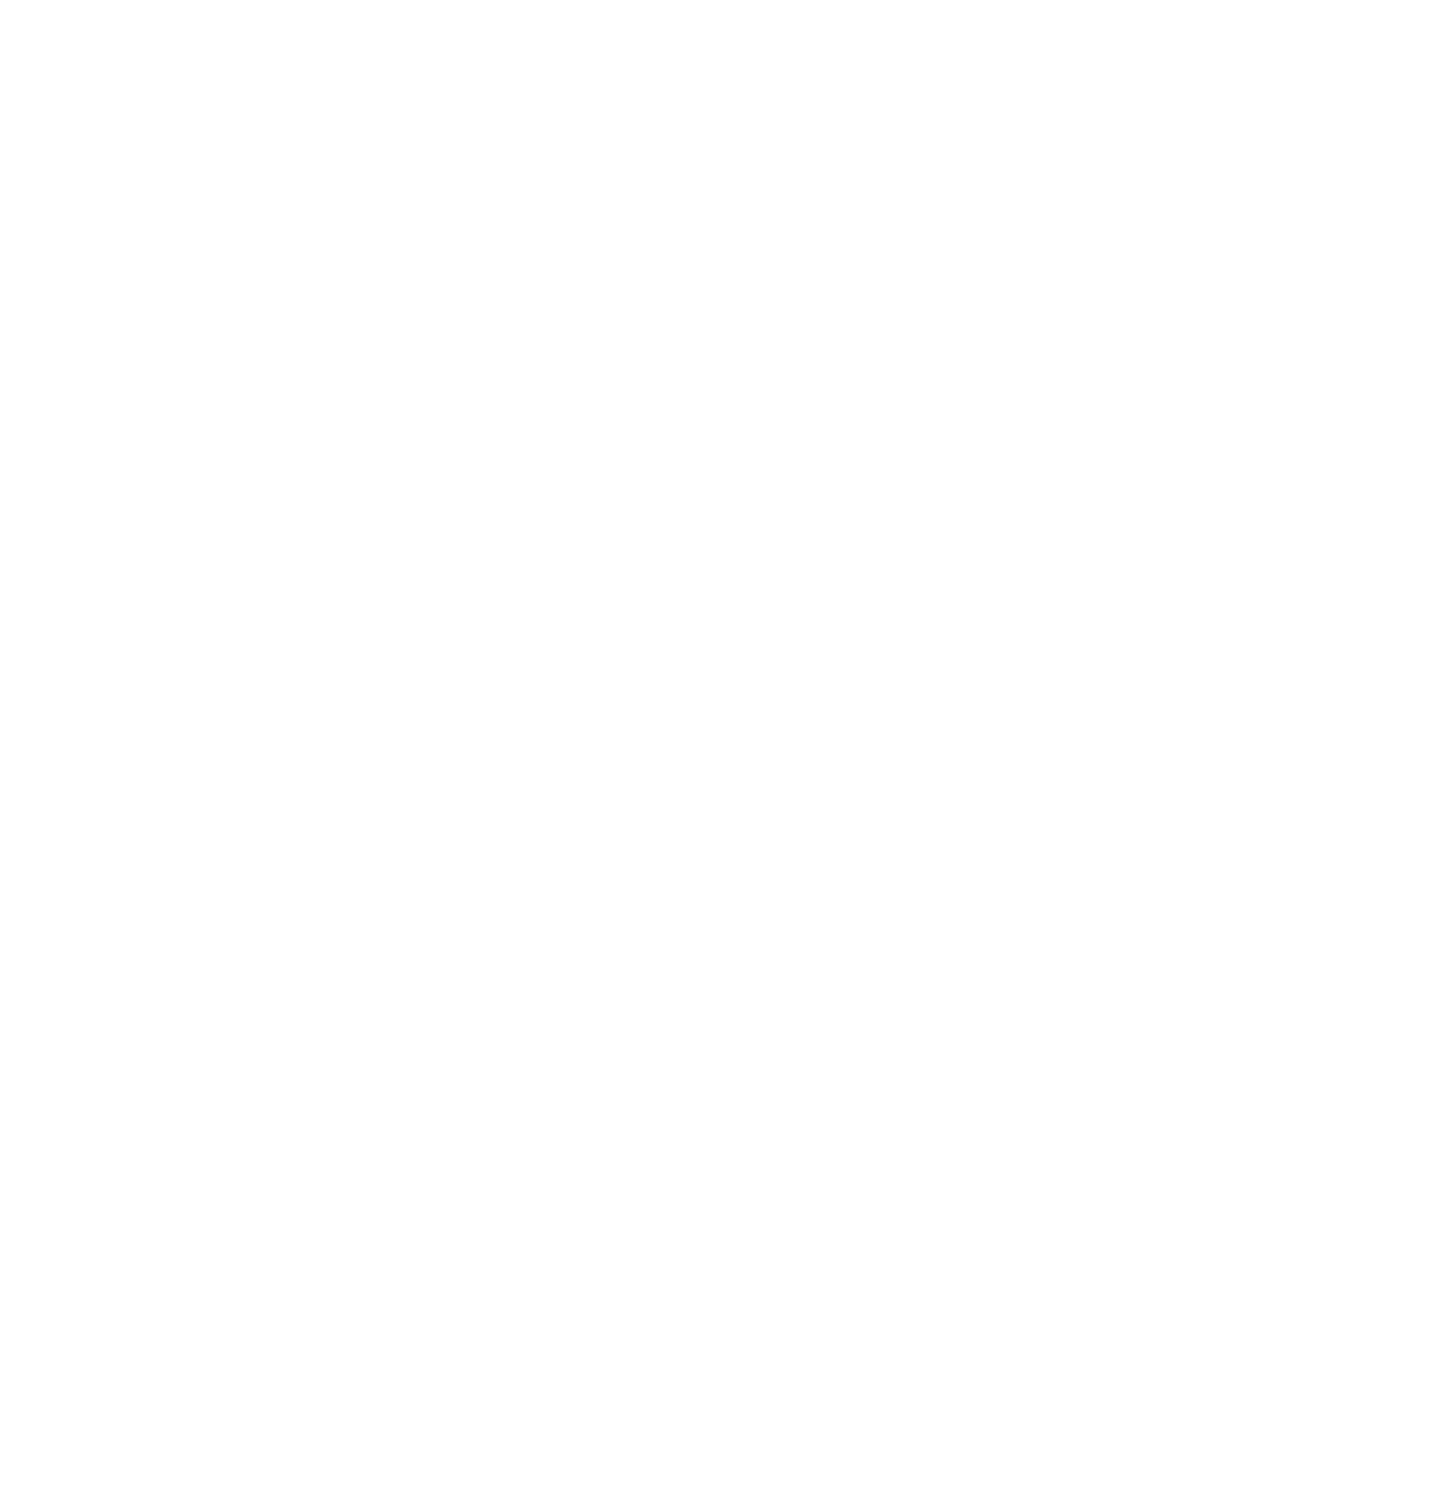 Kikkoman logo for dark backgrounds (transparent PNG)